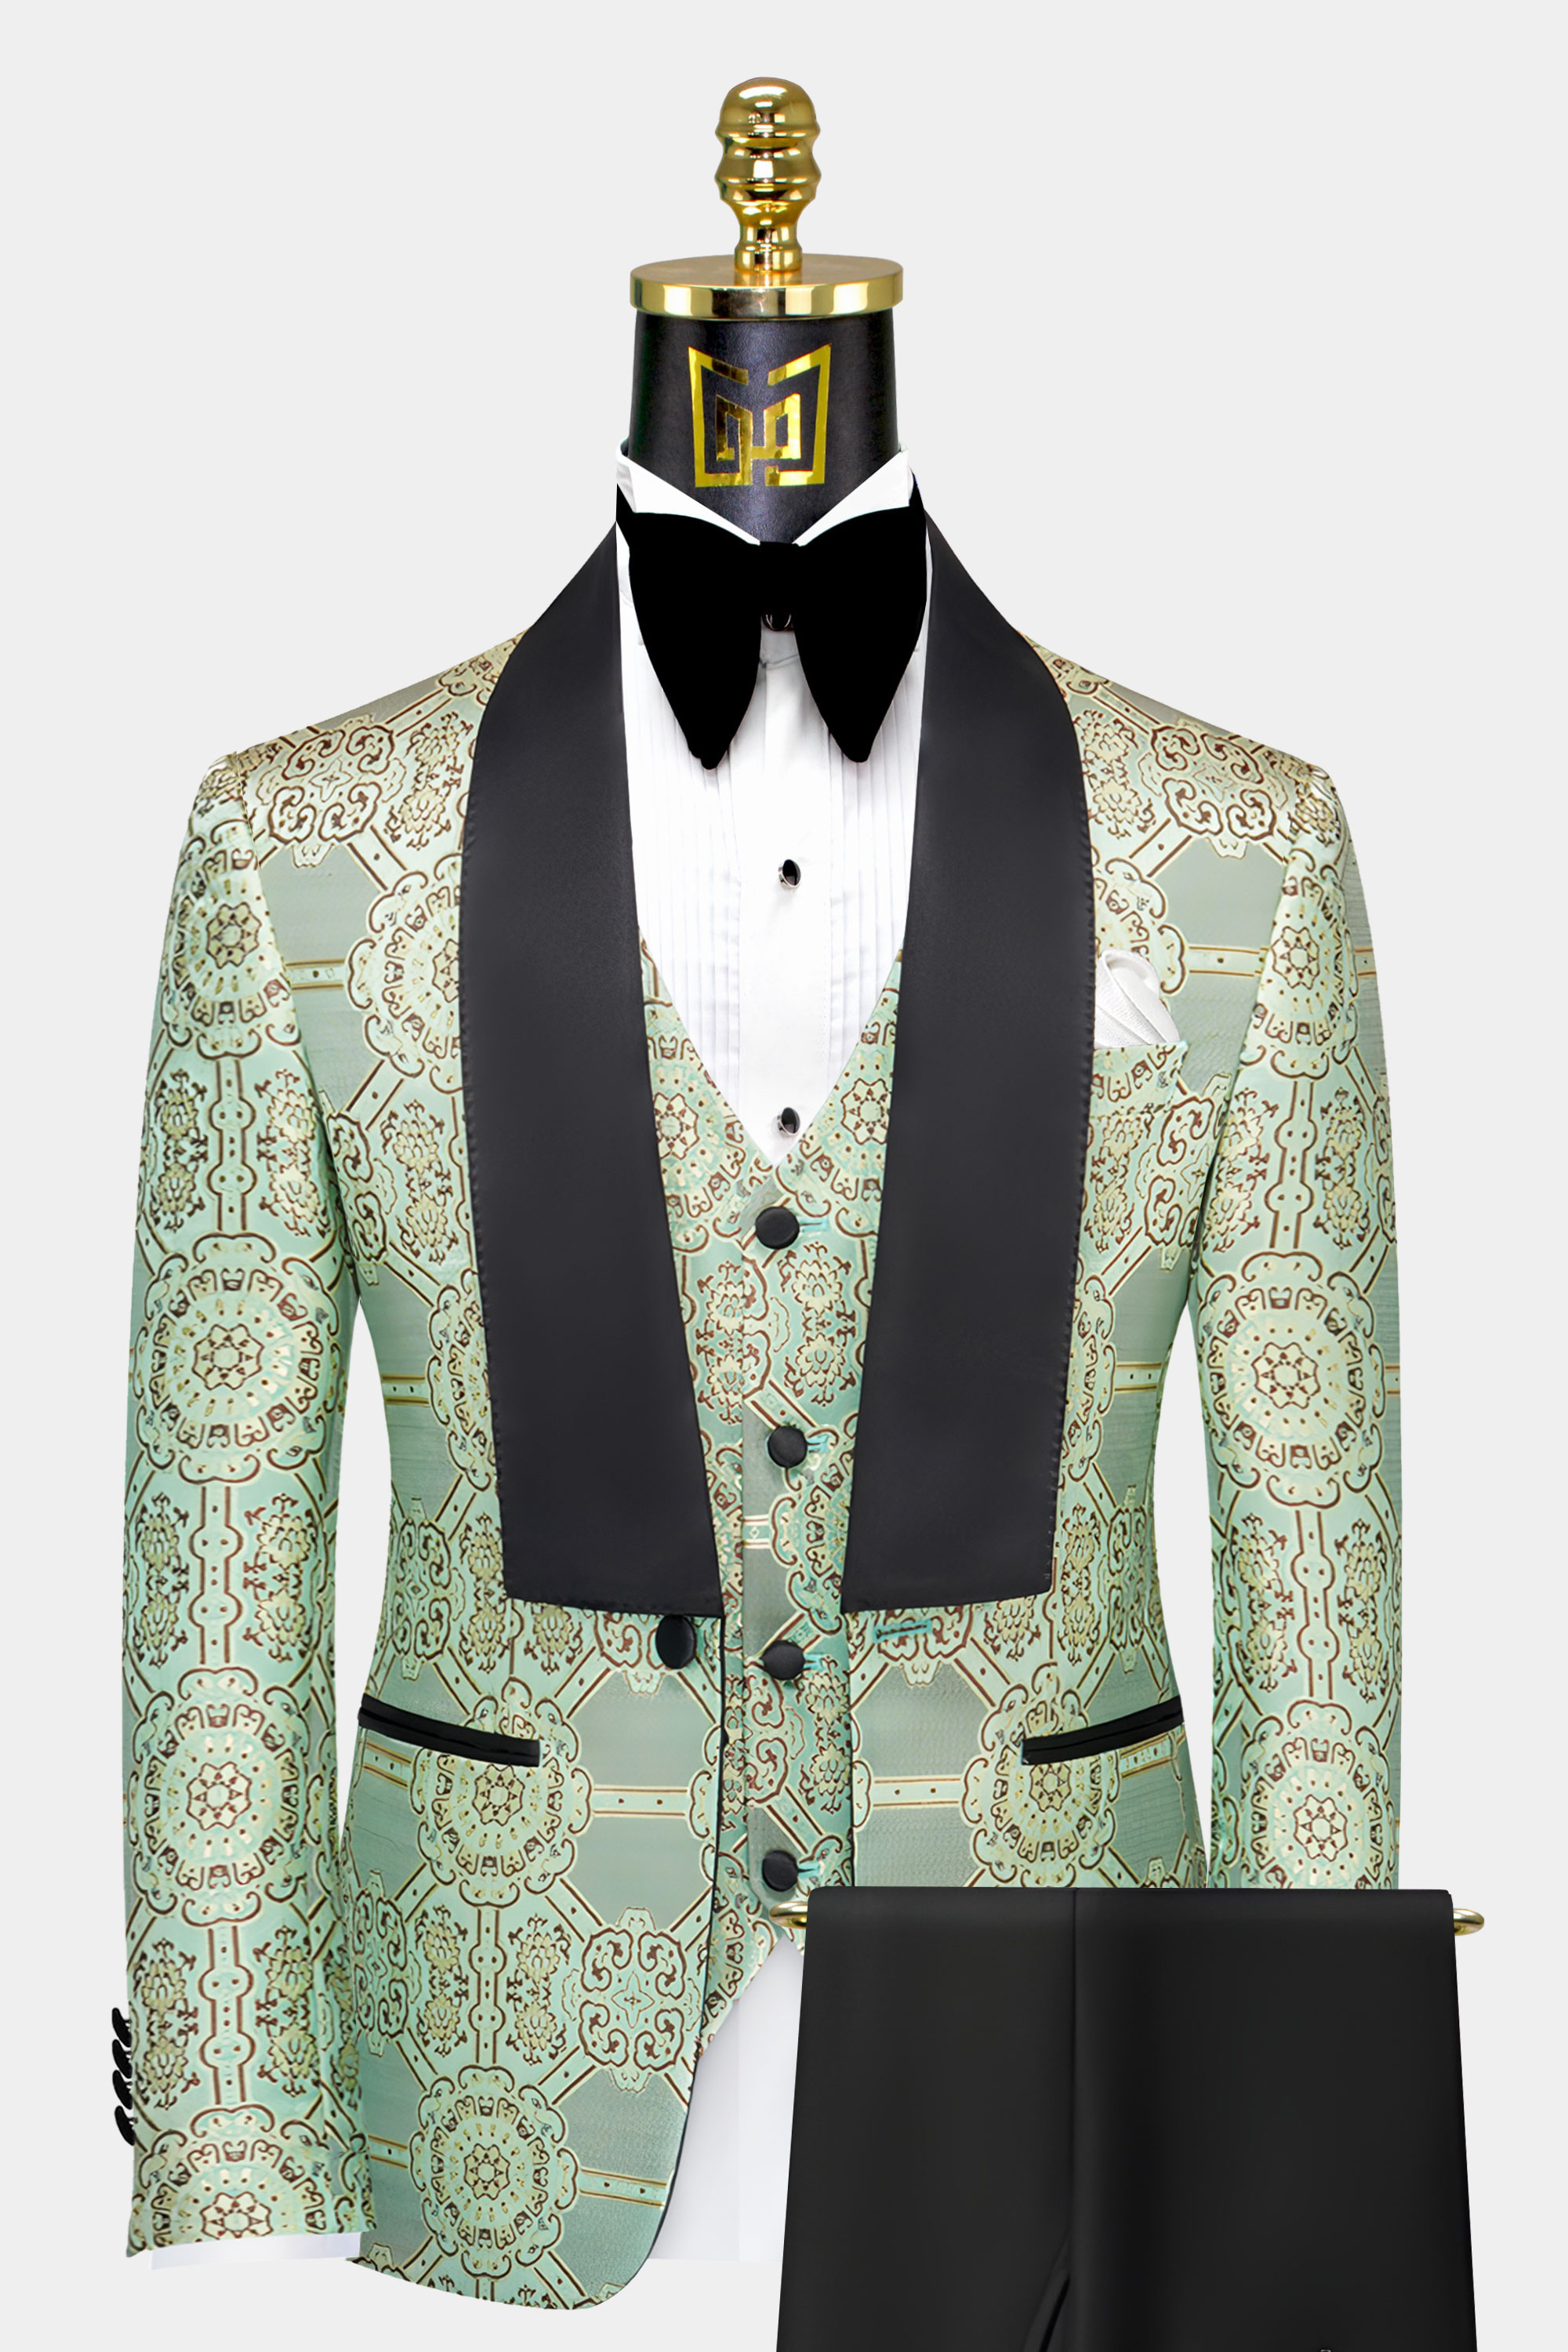 Mint Green Tuxedo Suit - 3 Piece | Gentleman's Guru